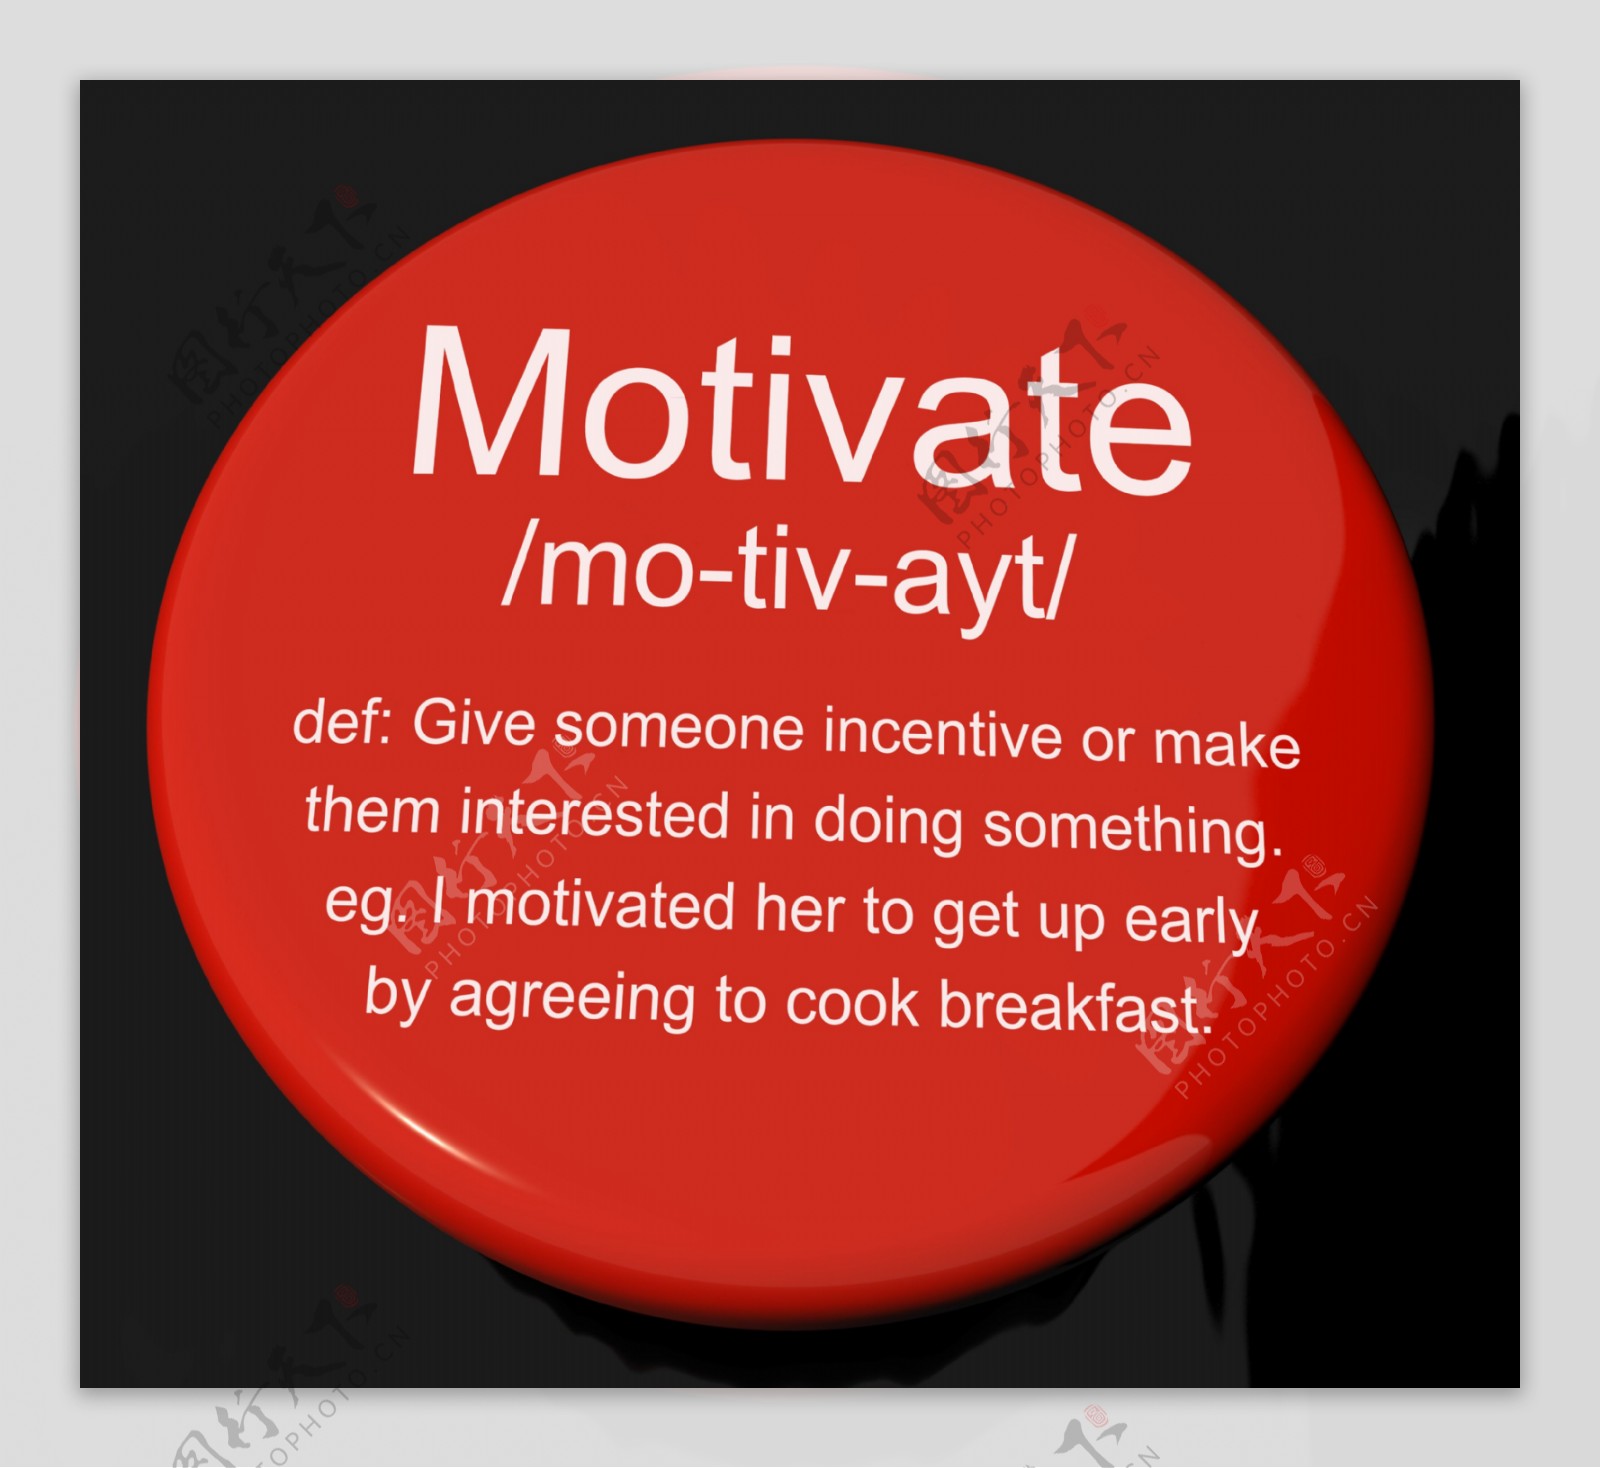 激励的定义按钮显示出积极的鼓励和启发